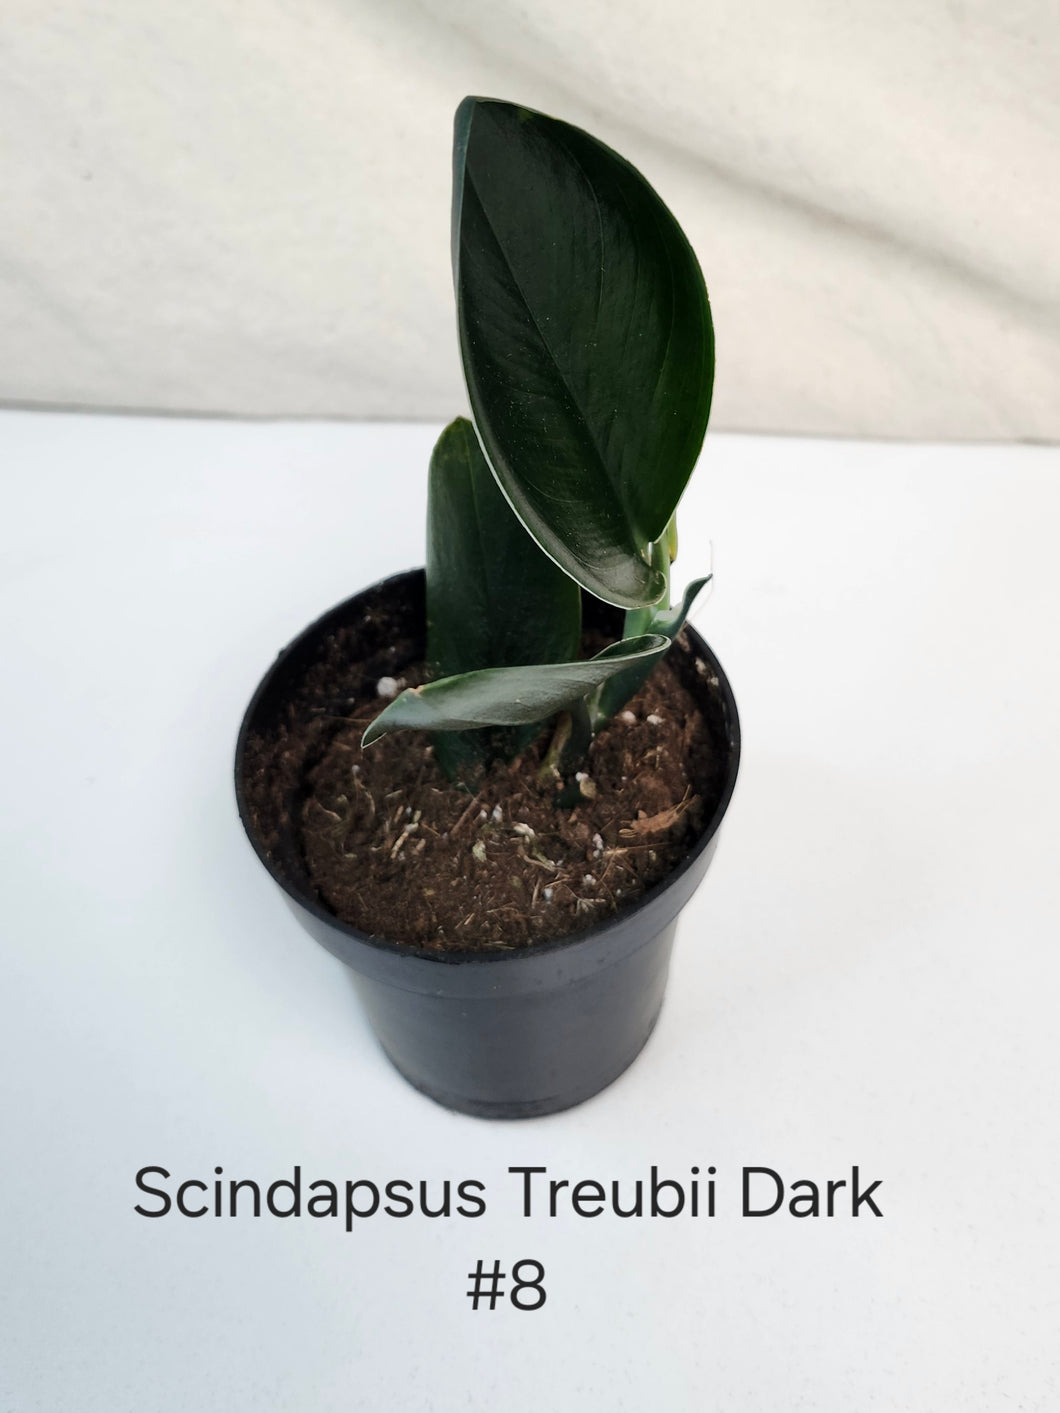 Scindapsus Treubii Dark Form #8